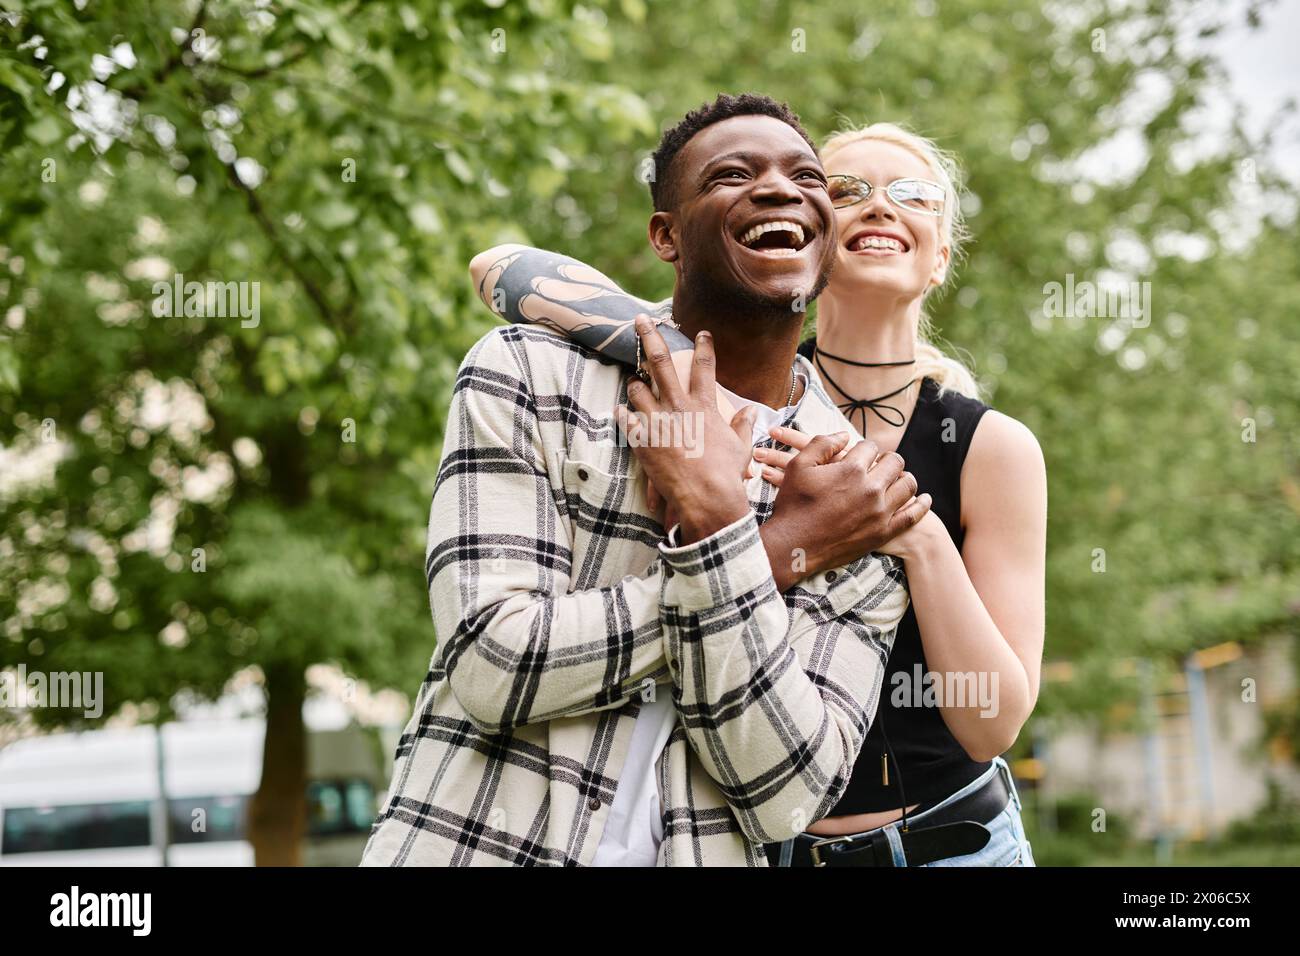 Ein glückliches multikulturelles Paar, ein Afroamerikaner, der draußen in einem Park eine kaukasische Frau in den Armen hält. Stockfoto